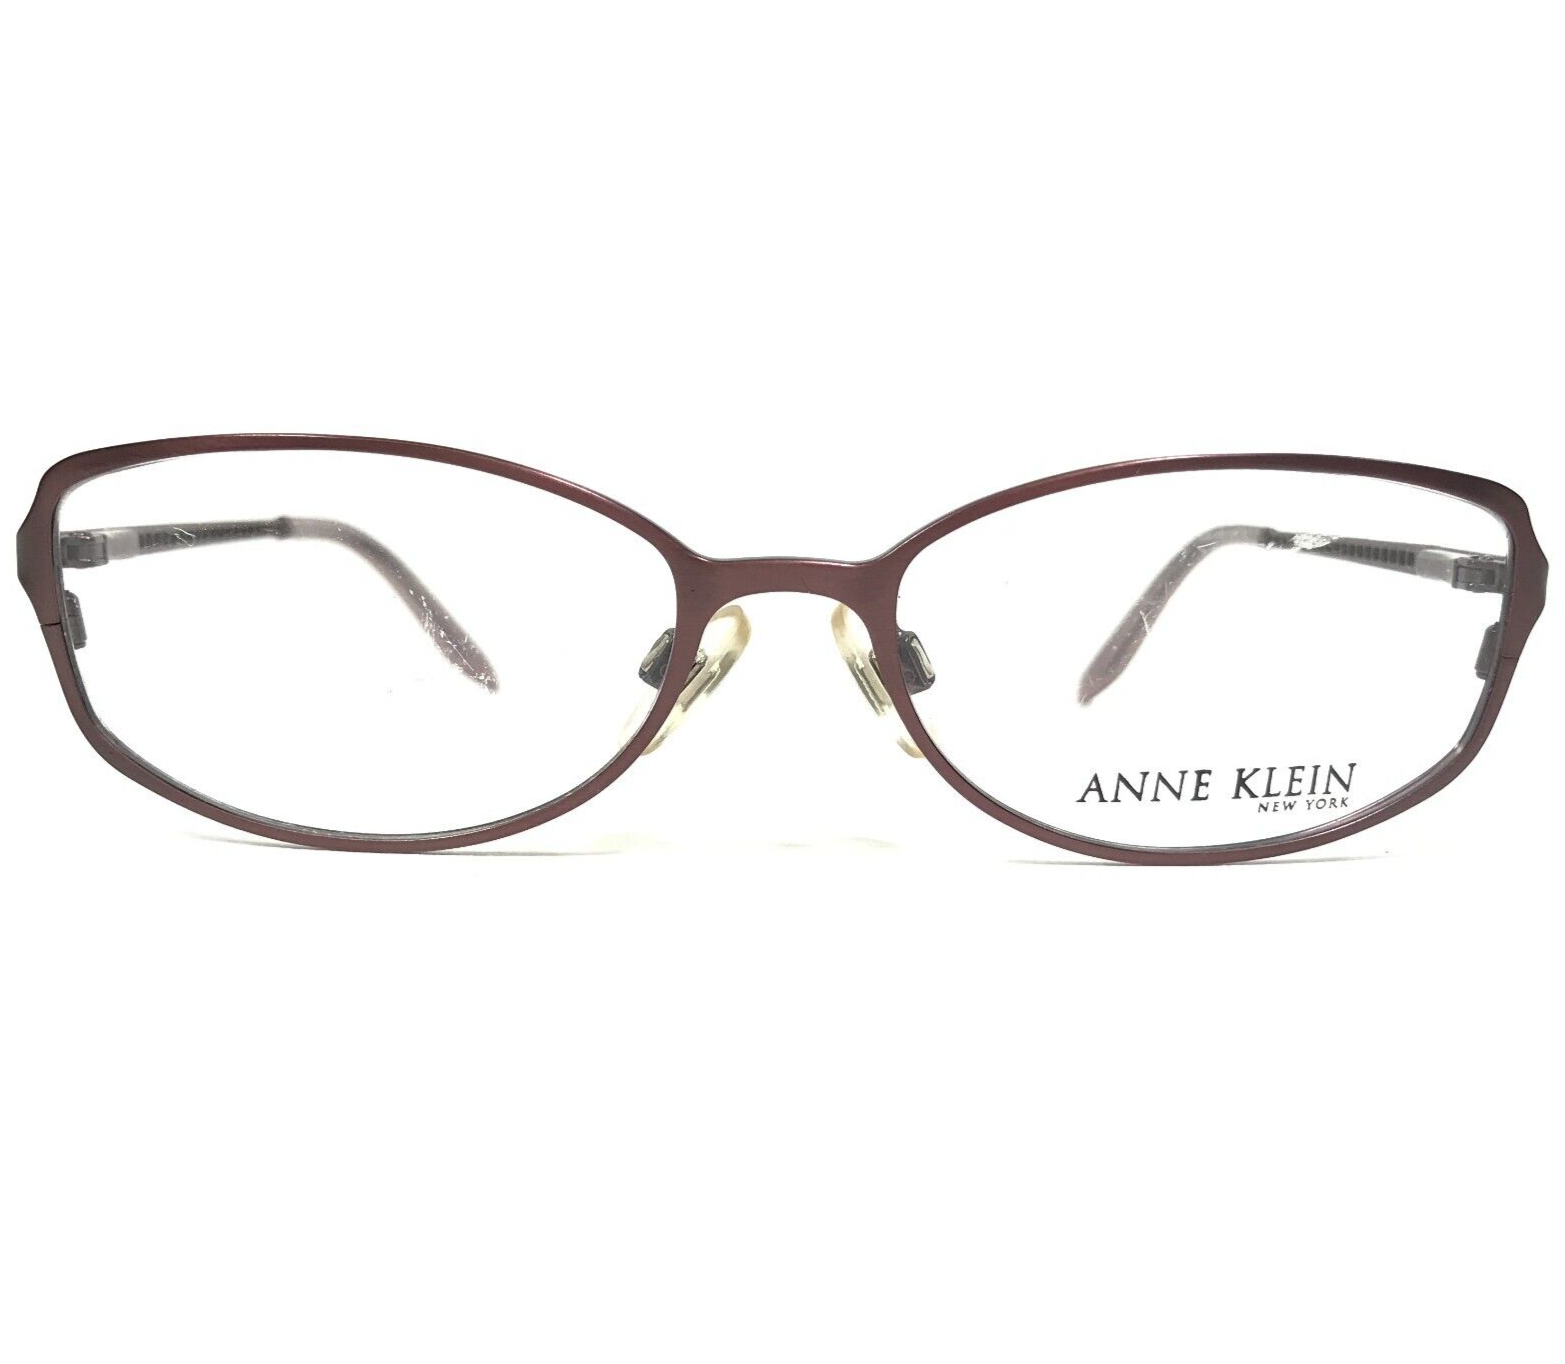 Primary image for Anne Klein Eyeglasses Frames AK9055 423S Brown Cat Eye Full Rim 51-16-135